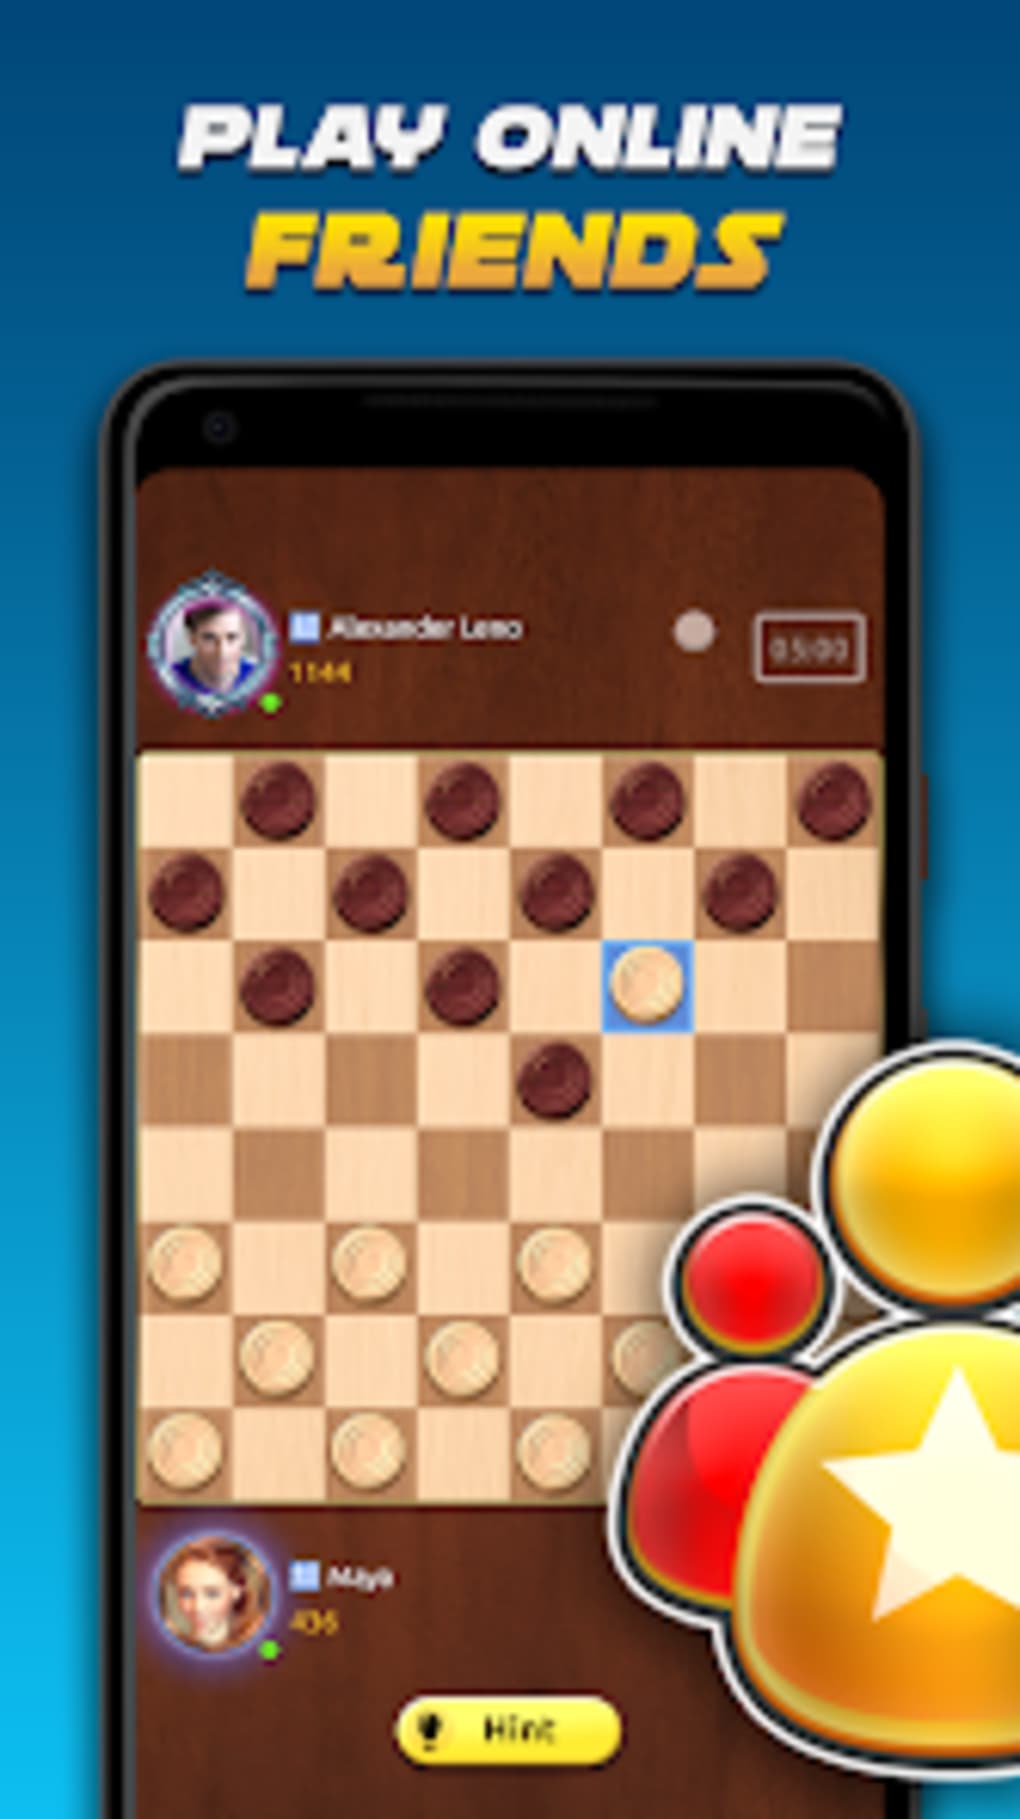 Master Checkers Multiplayer em Jogos na Internet